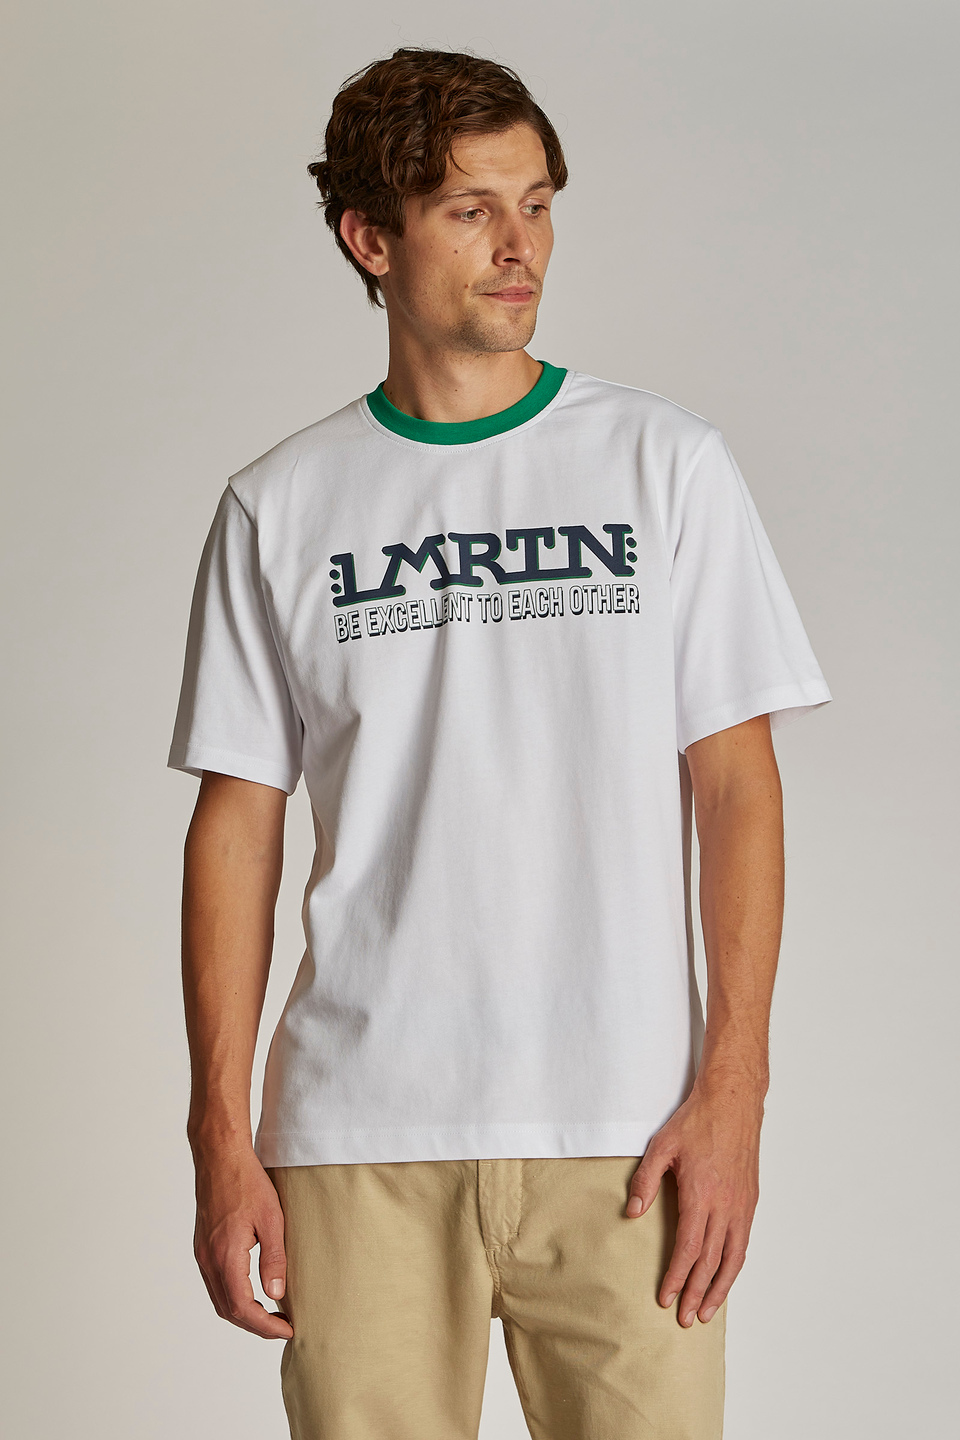 T-shirt da uomo a maniche corte con colletto a contrasto modello over | La Martina - Official Online Shop